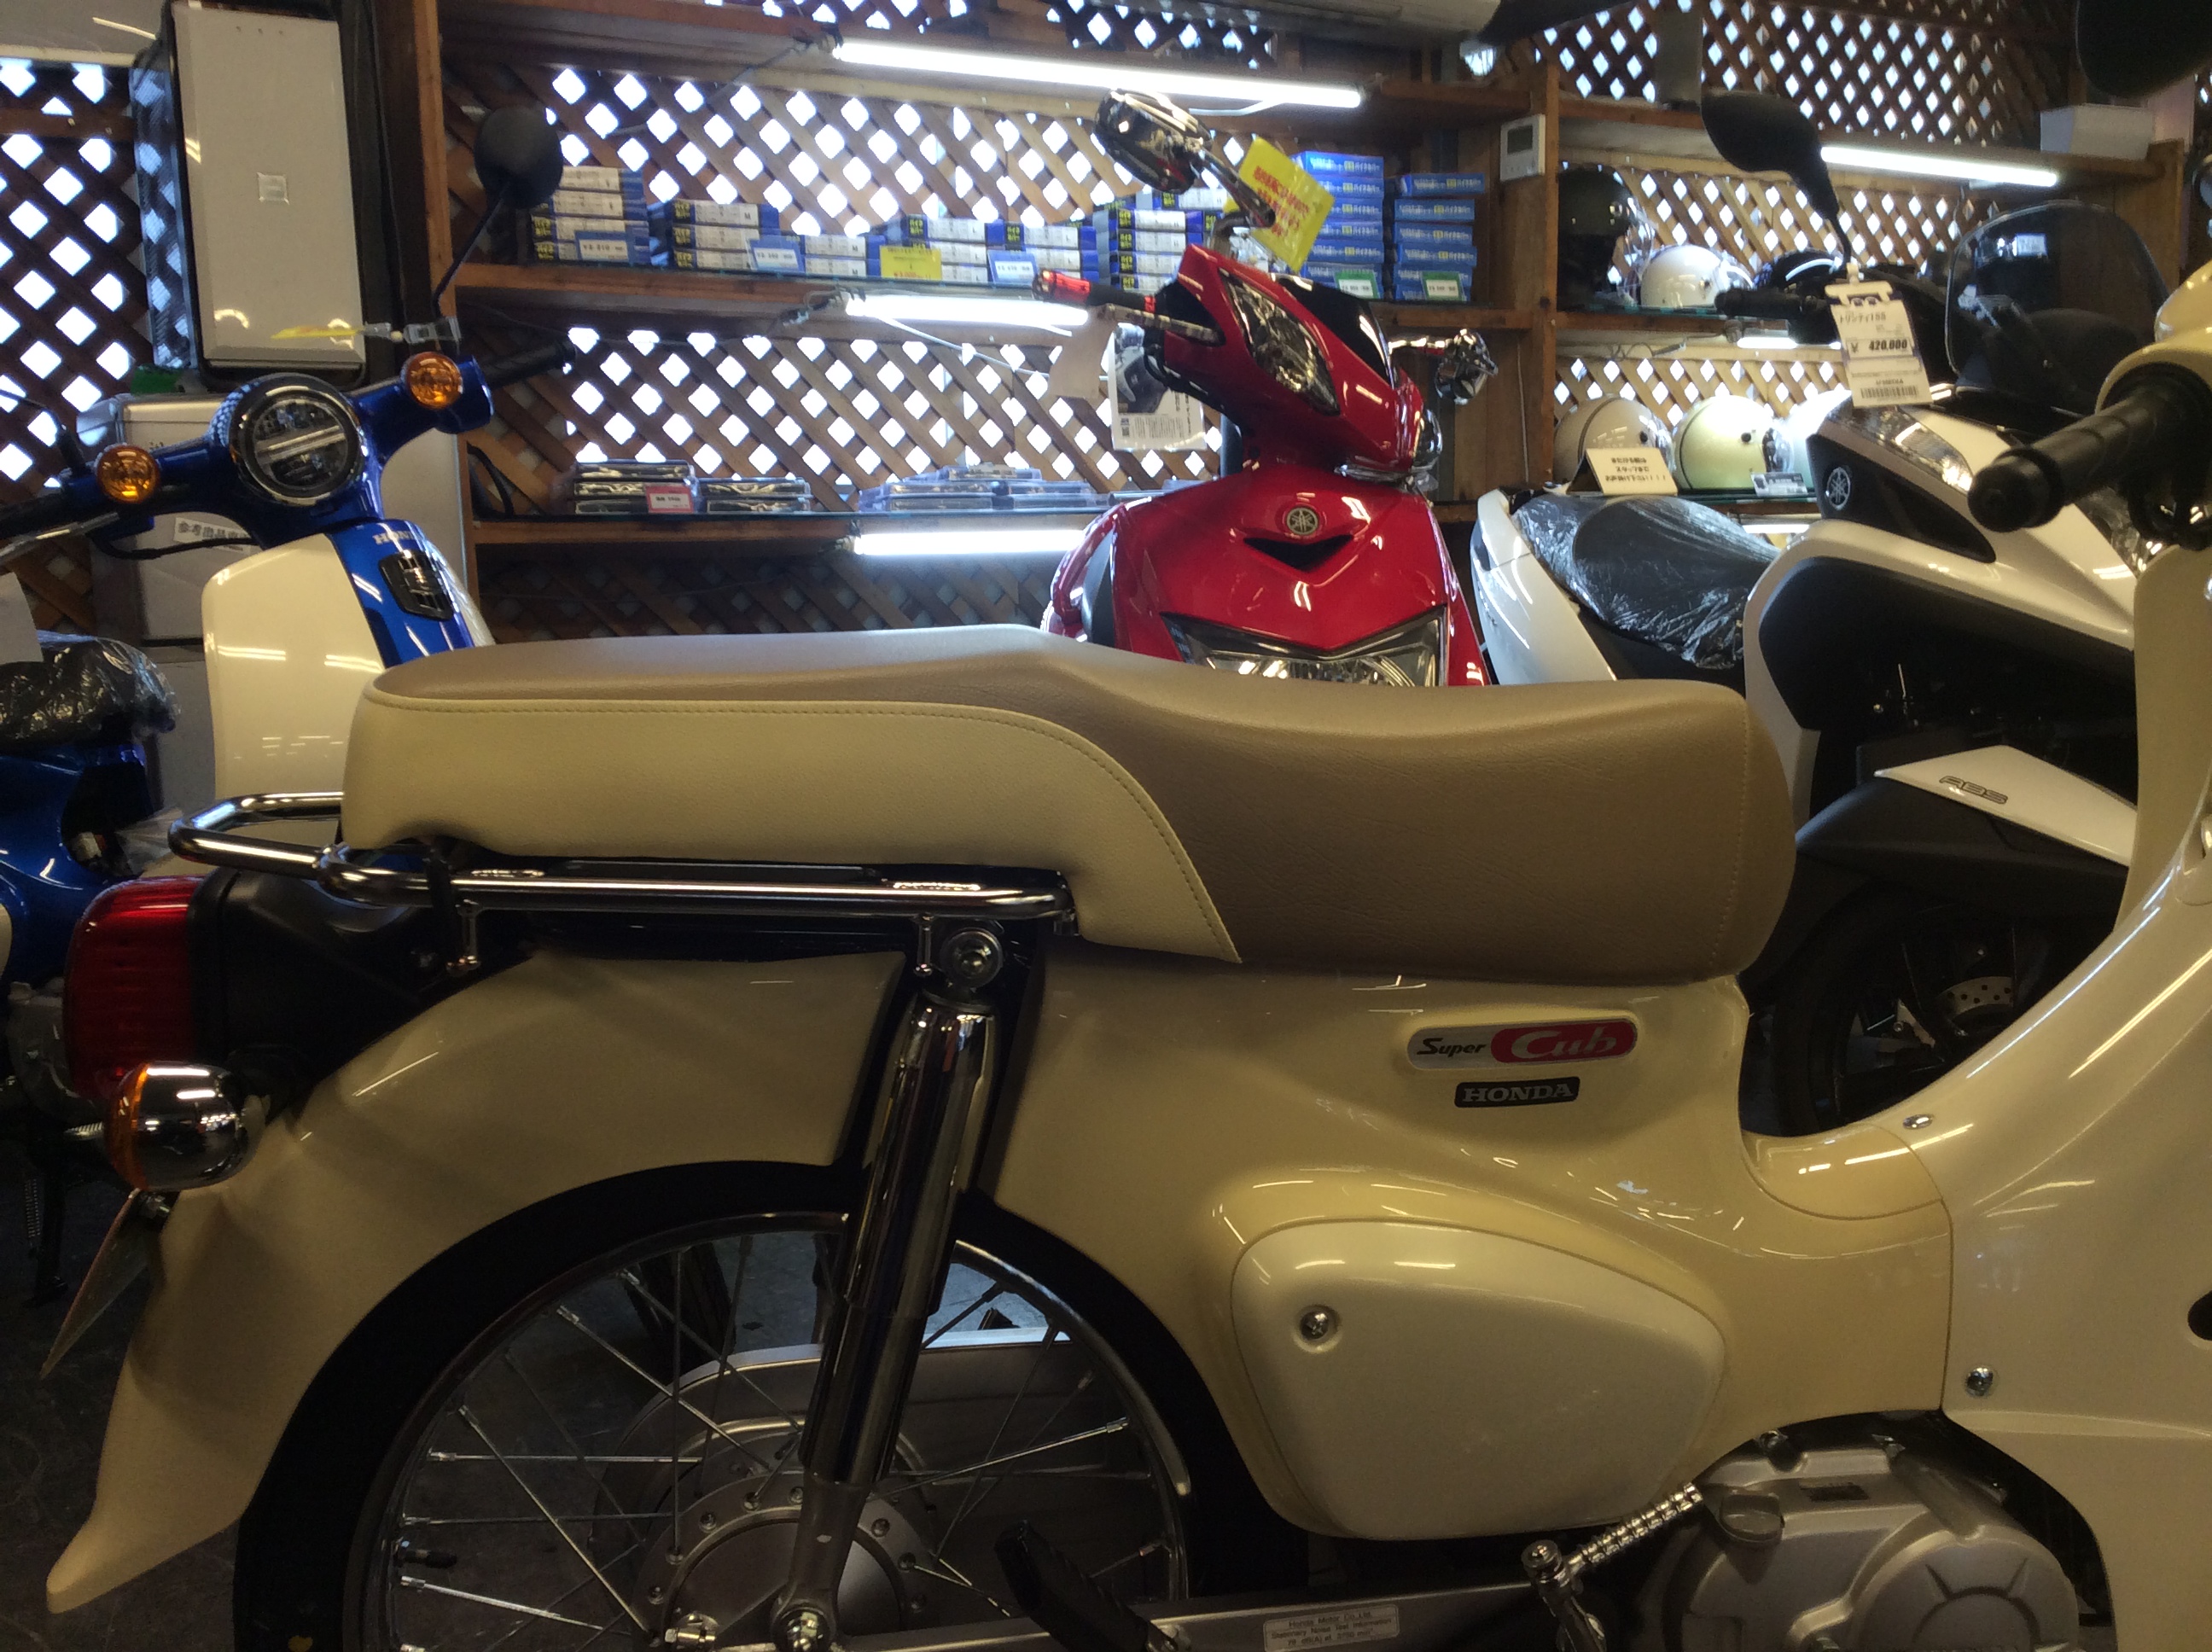 新型スーパーカブ110納車 最新情報 U Media ユーメディア 中古バイク 新車バイク探しの決定版 神奈川 東京でバイク探すならユーメディア